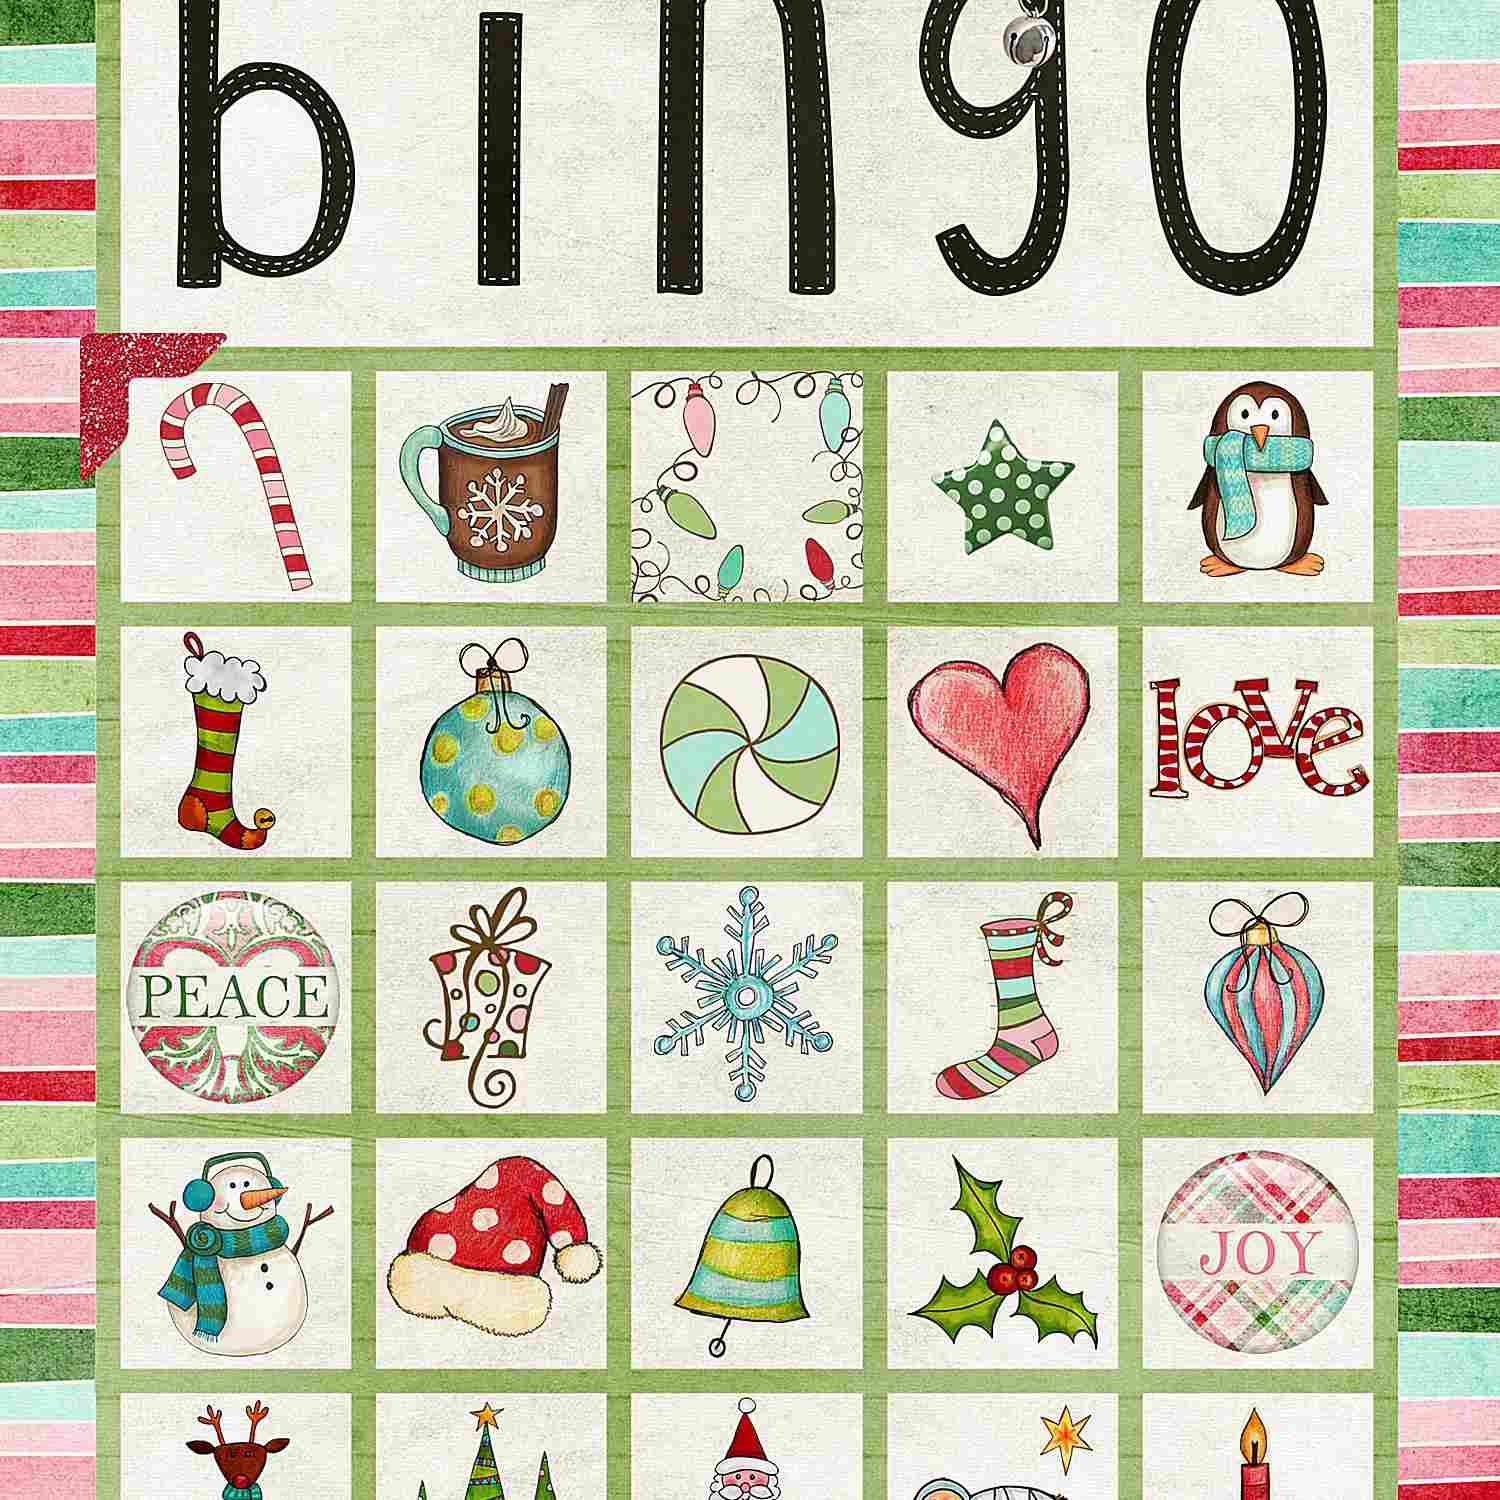 11 Free, Printable Christmas Bingo Games For The Family - Christmas Bingo Game Printable Free